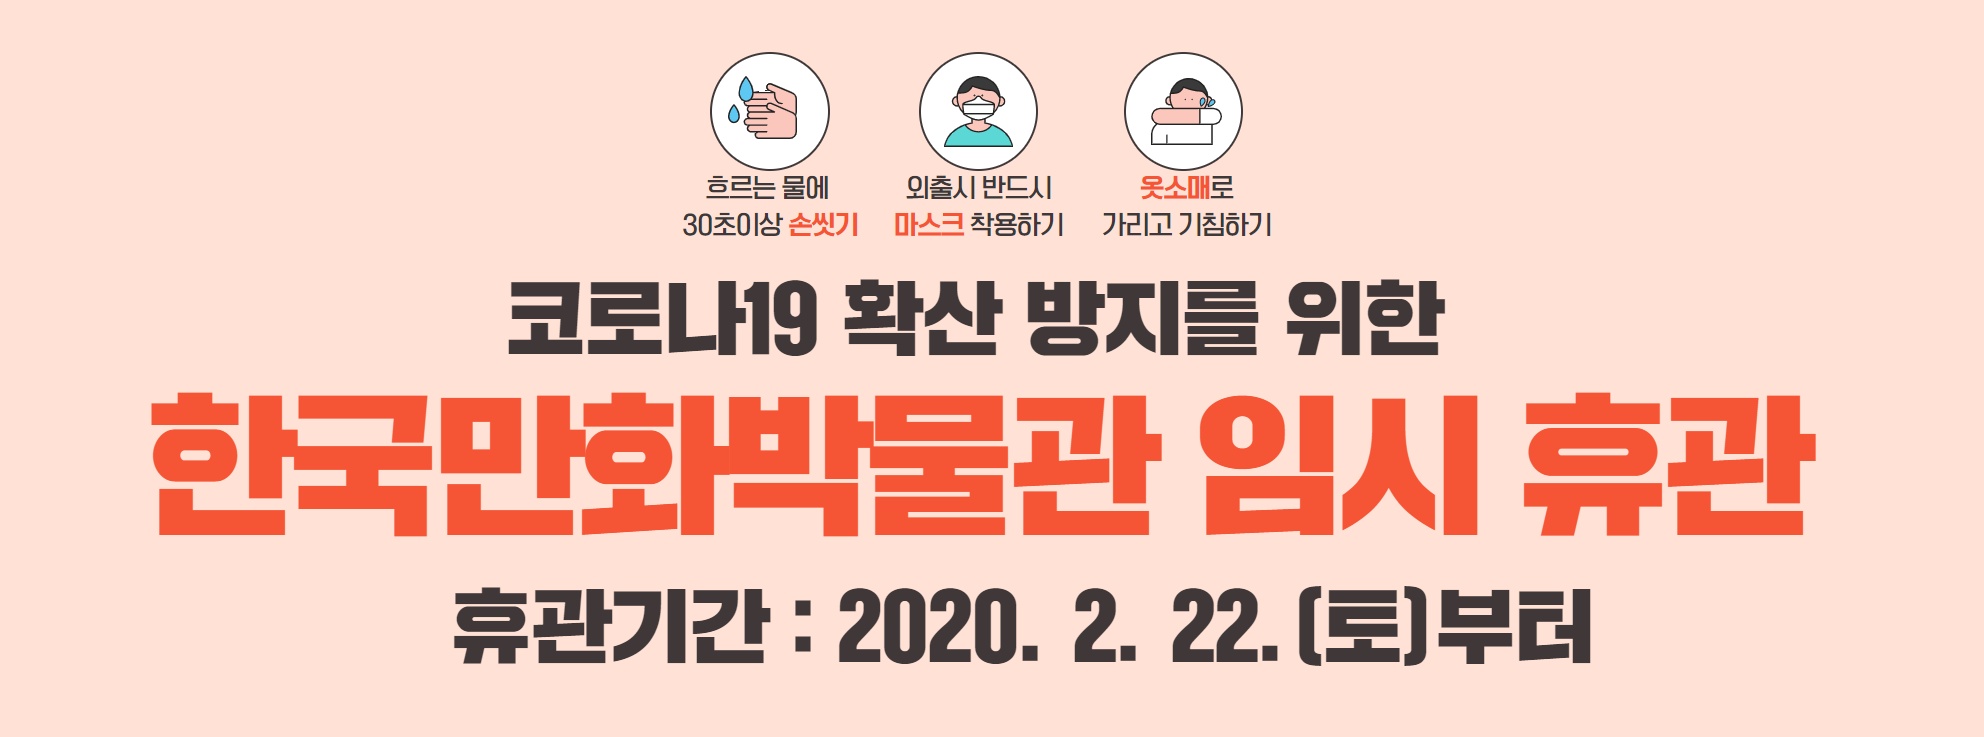 [긴급공지] 한국만화박물관 임시 휴관 안내